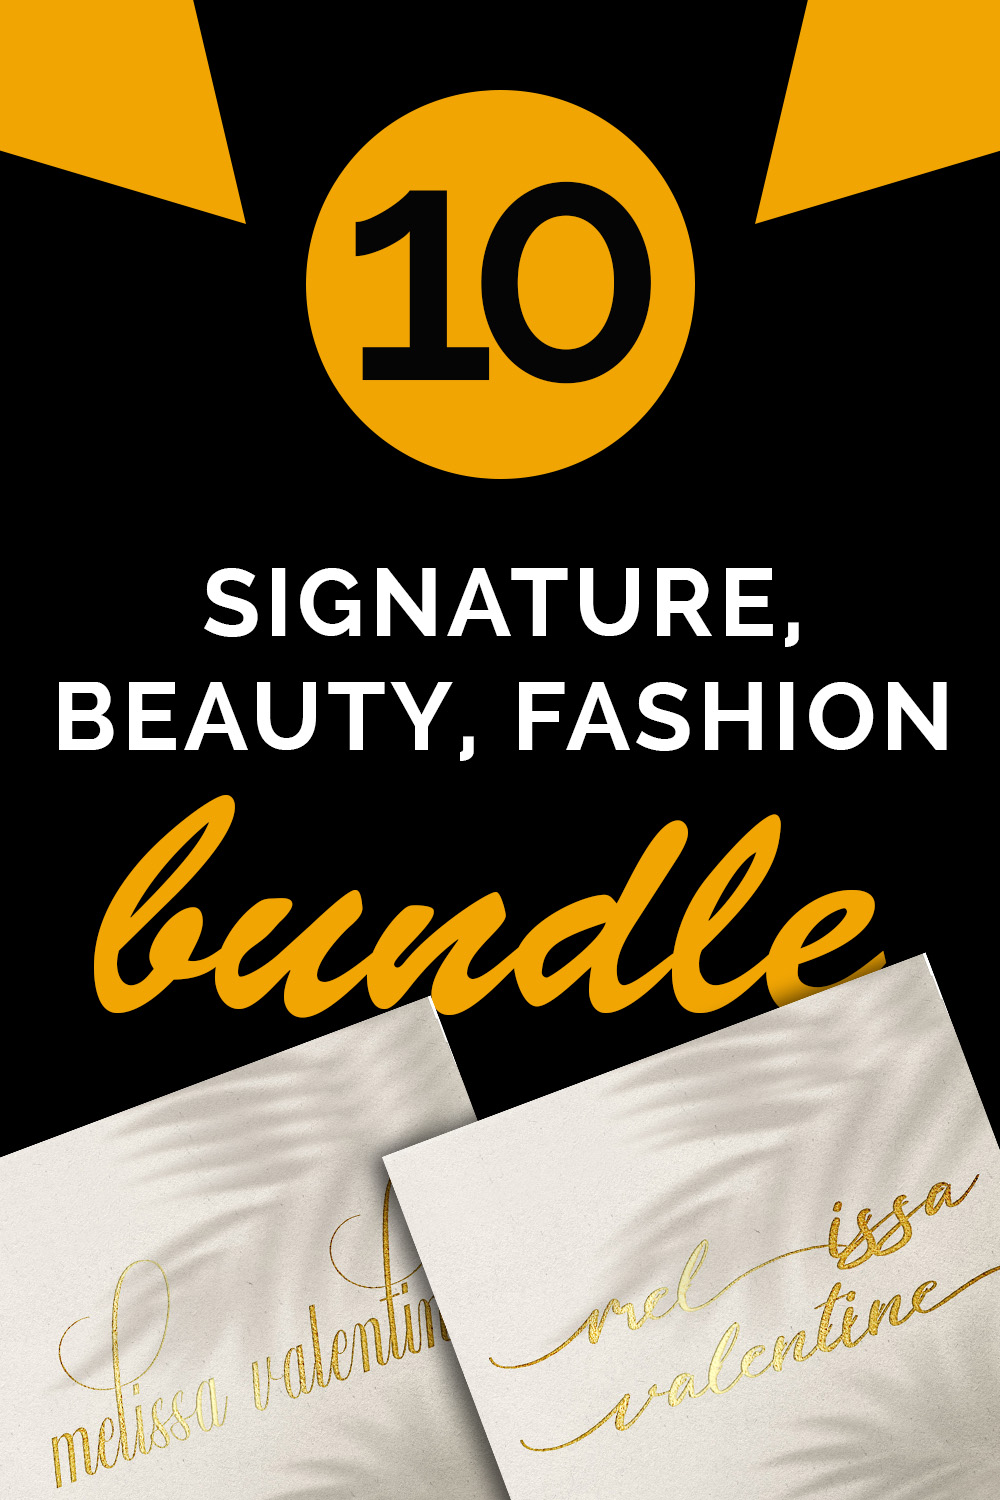 Luxury and Beauty Signature Logo pinterest image.